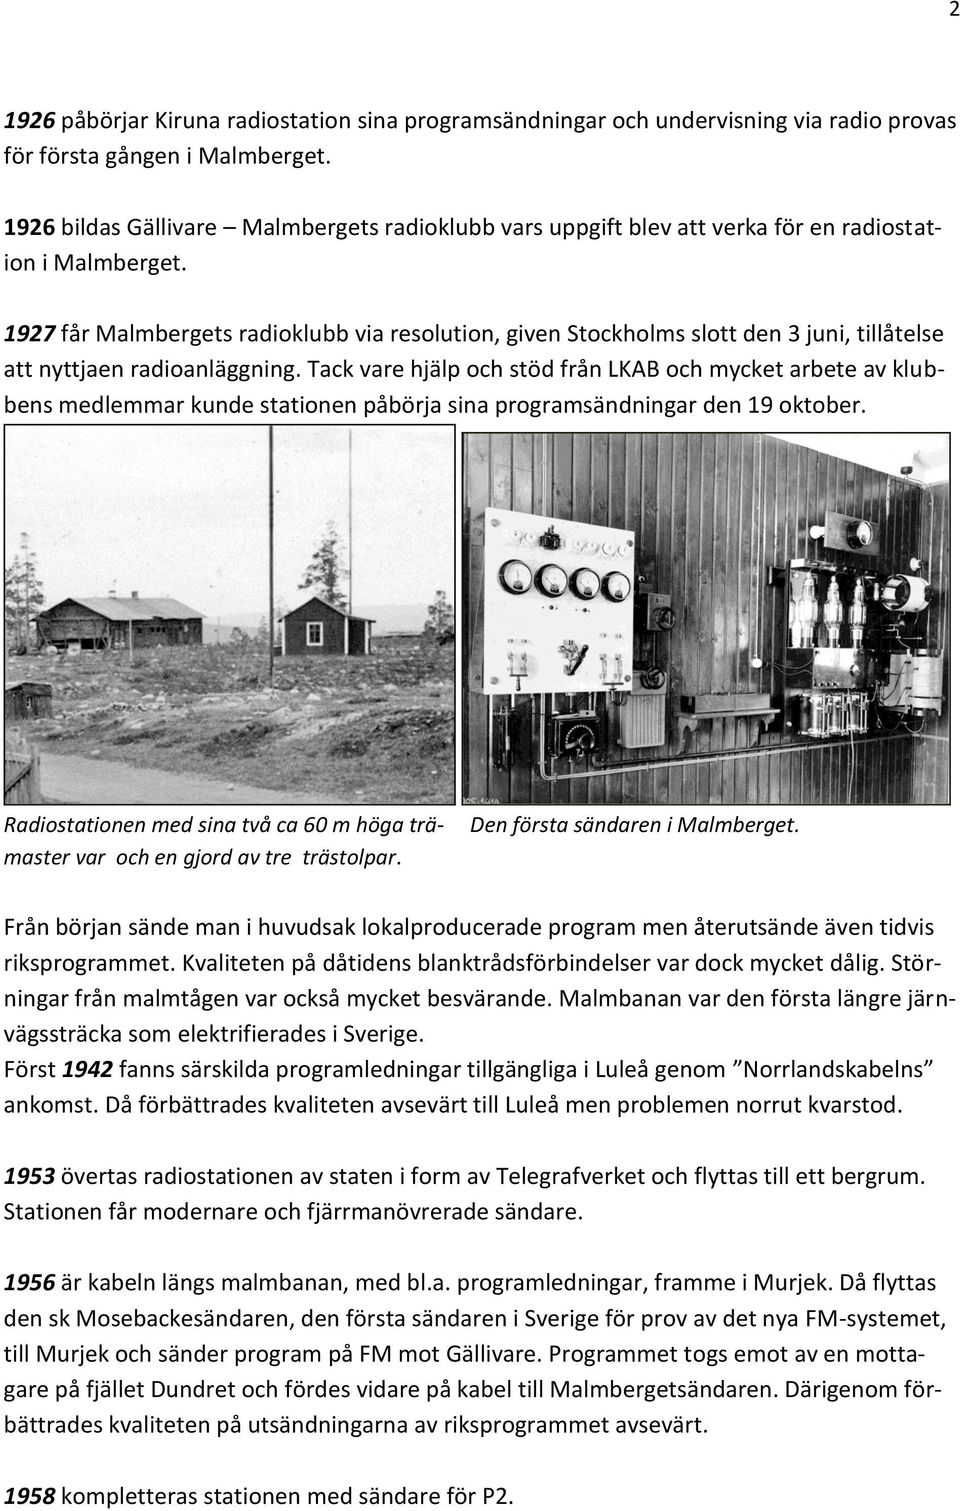 1927 får Malmbergets radioklubb via resolution, given Stockholms slott den 3 juni, tillåtelse att nyttjaen radioanläggning.